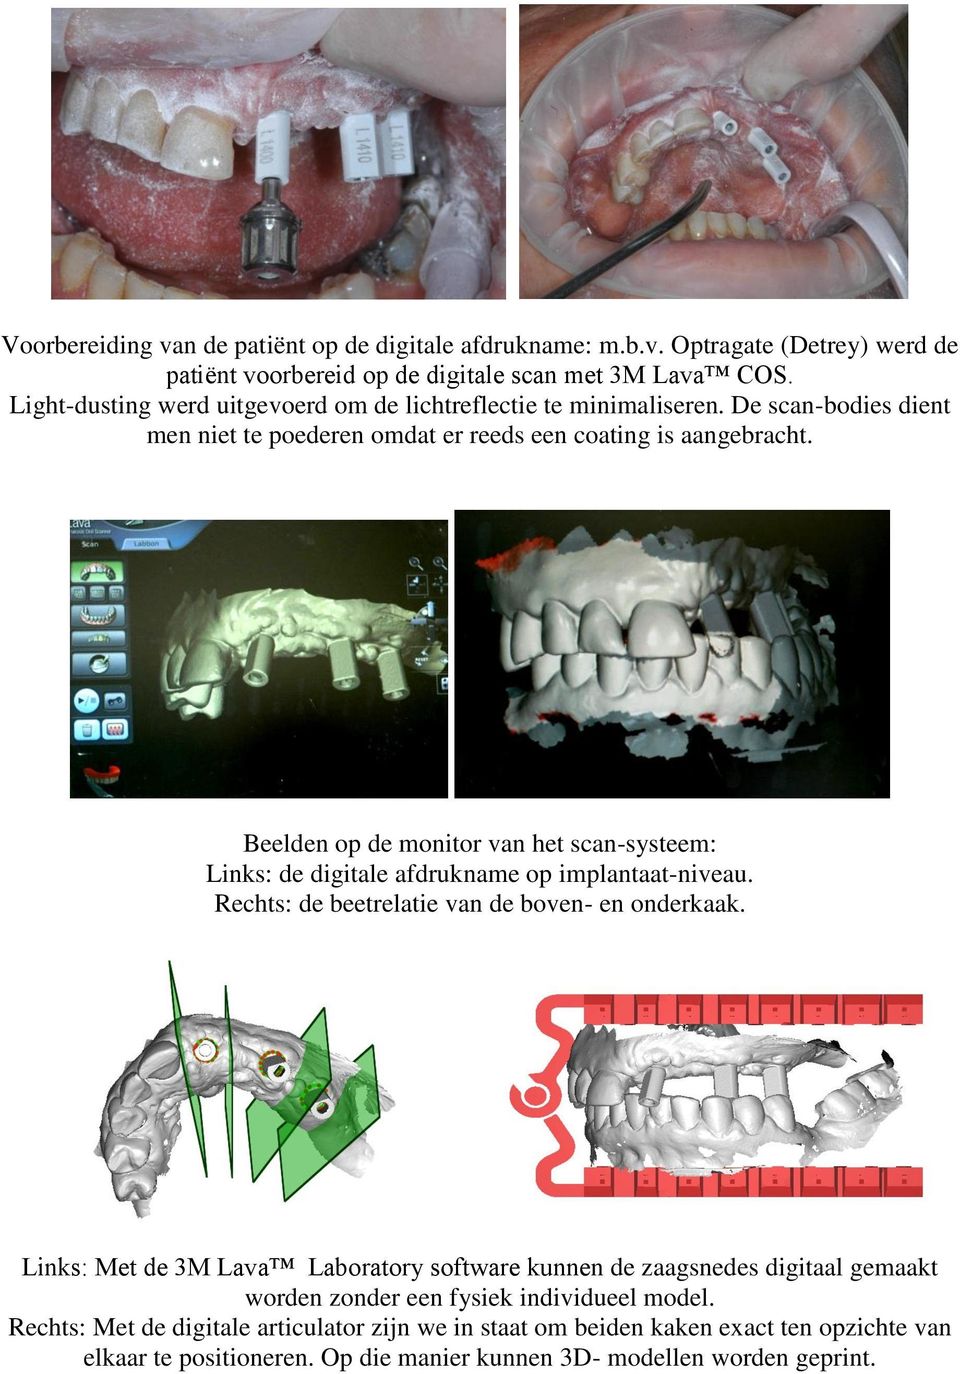 Beelden op de monitor van het scan-systeem: Links: de digitale afdrukname op implantaat-niveau. Rechts: de beetrelatie van de boven- en onderkaak.